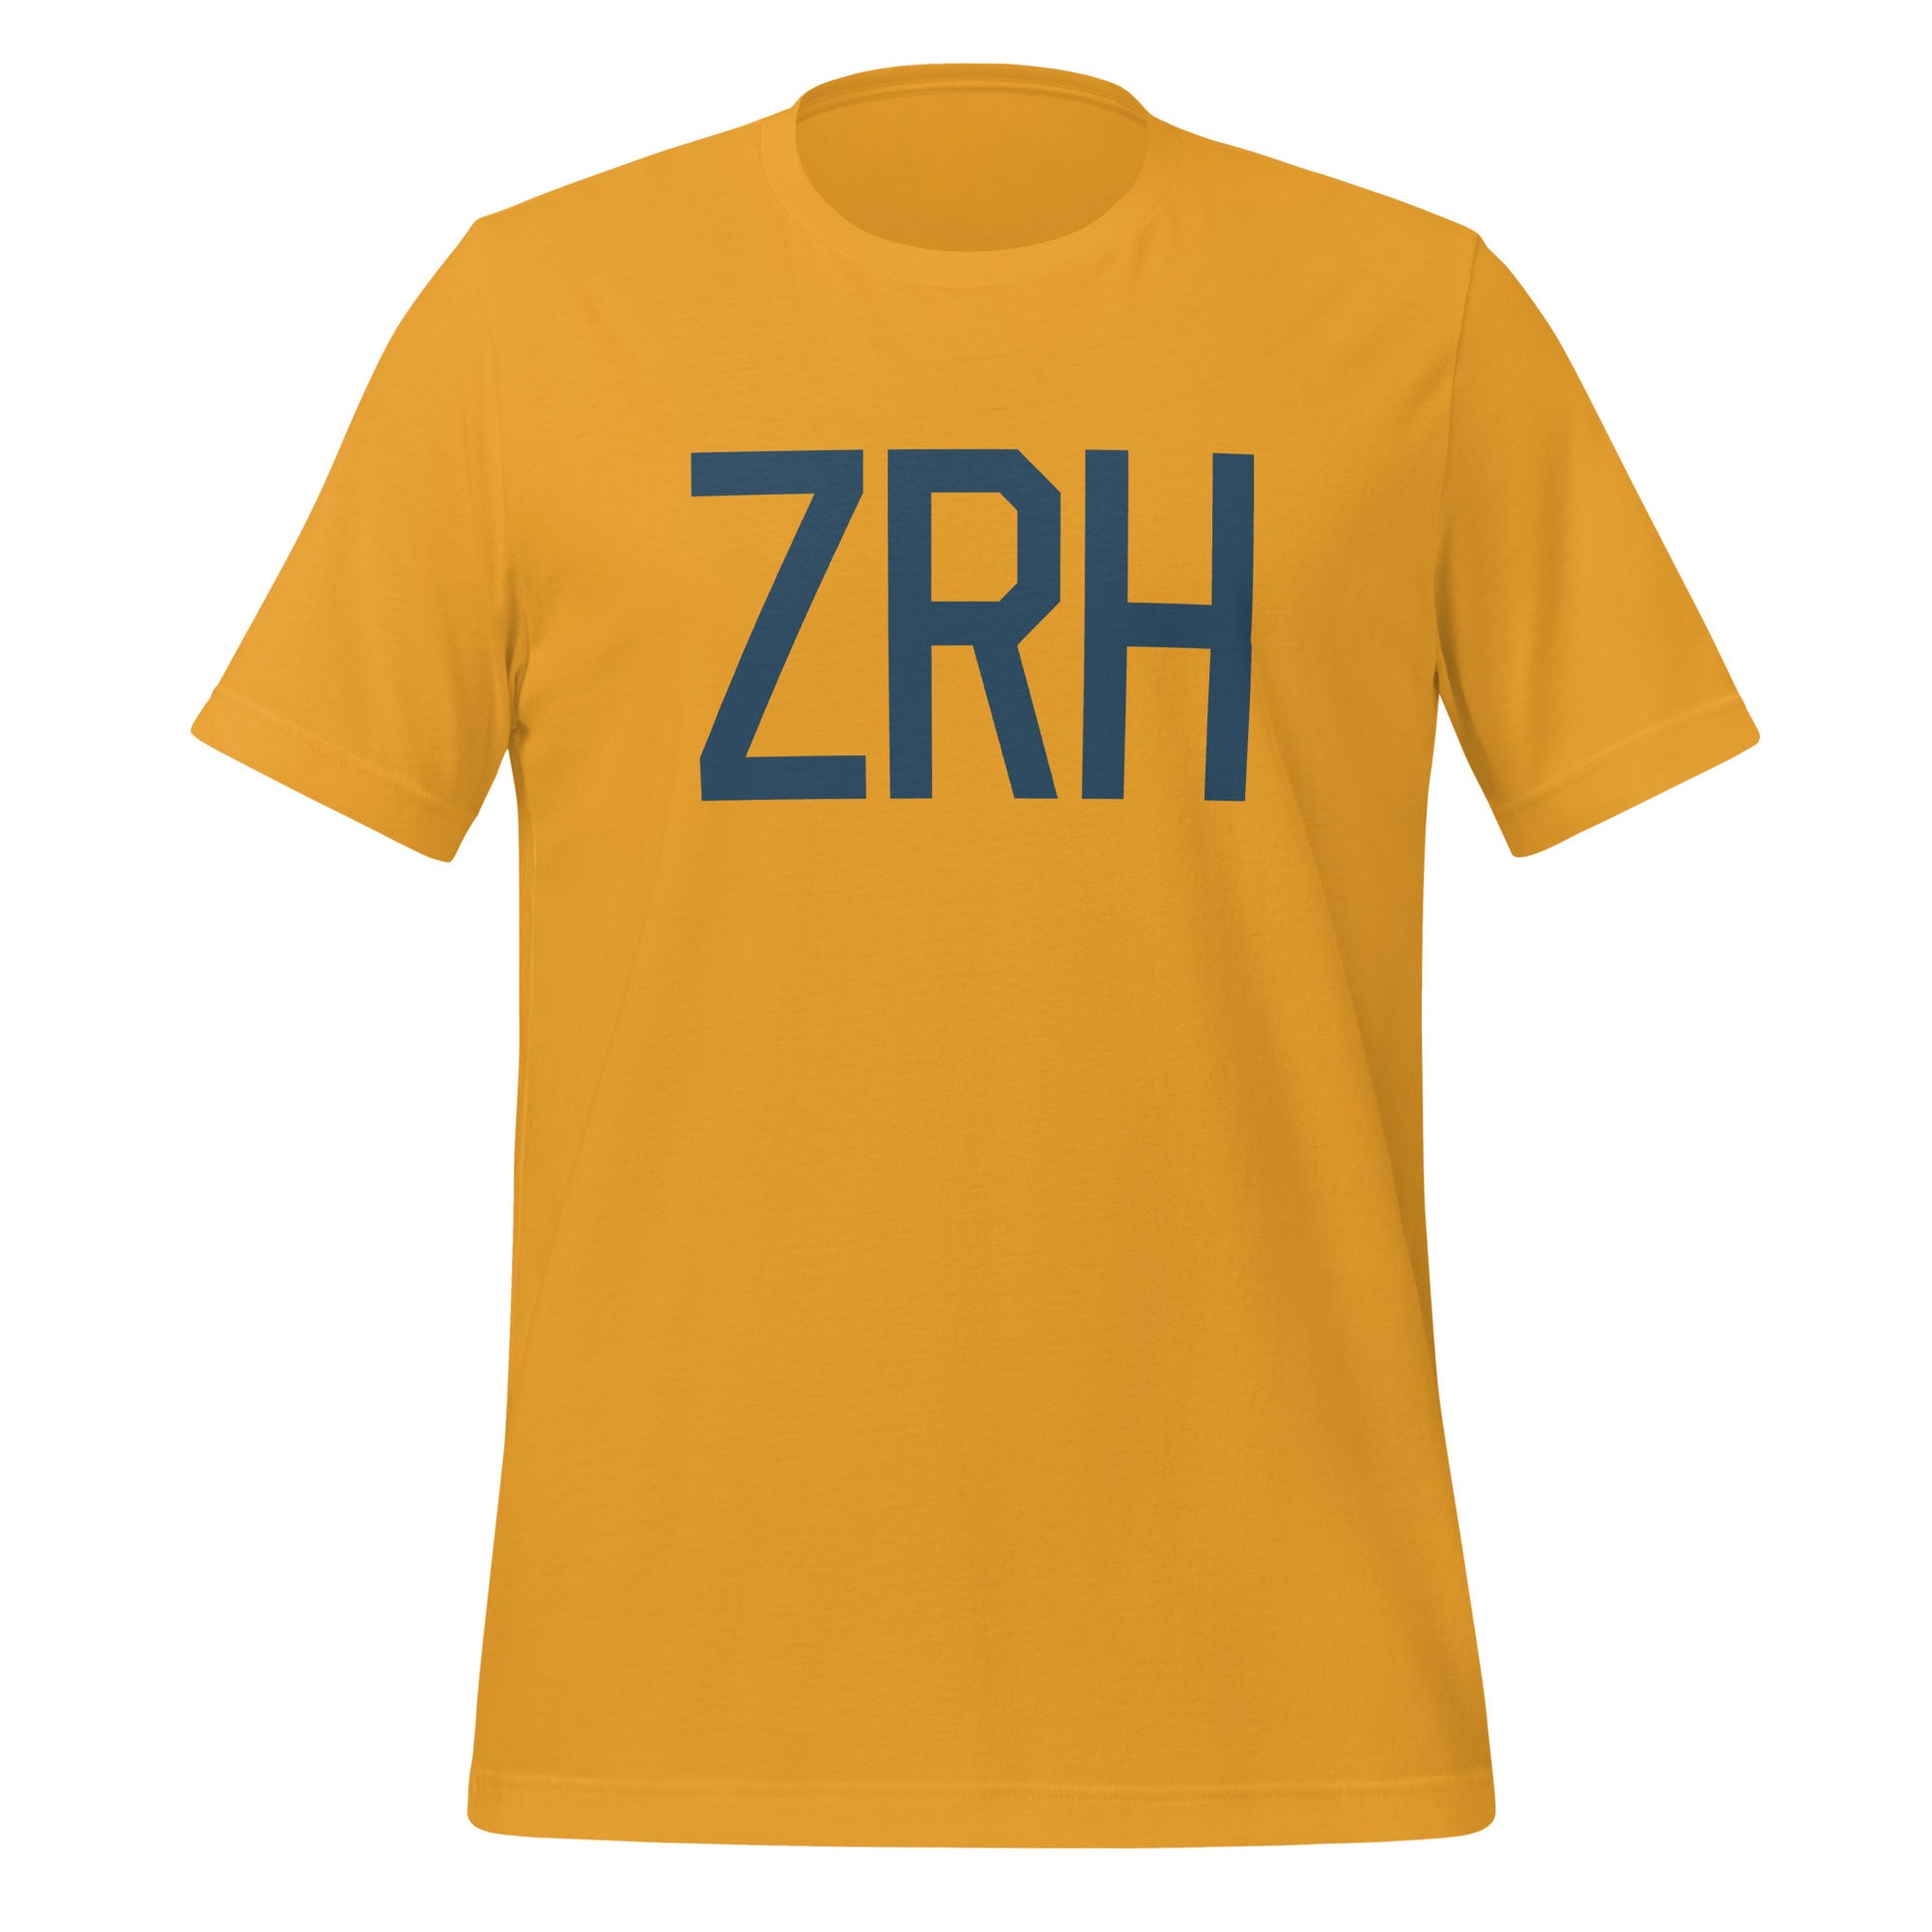 Aviation Lover Unisex T-Shirt - Blue Graphic • ZRH Zurich • YHM Designs - Image 06